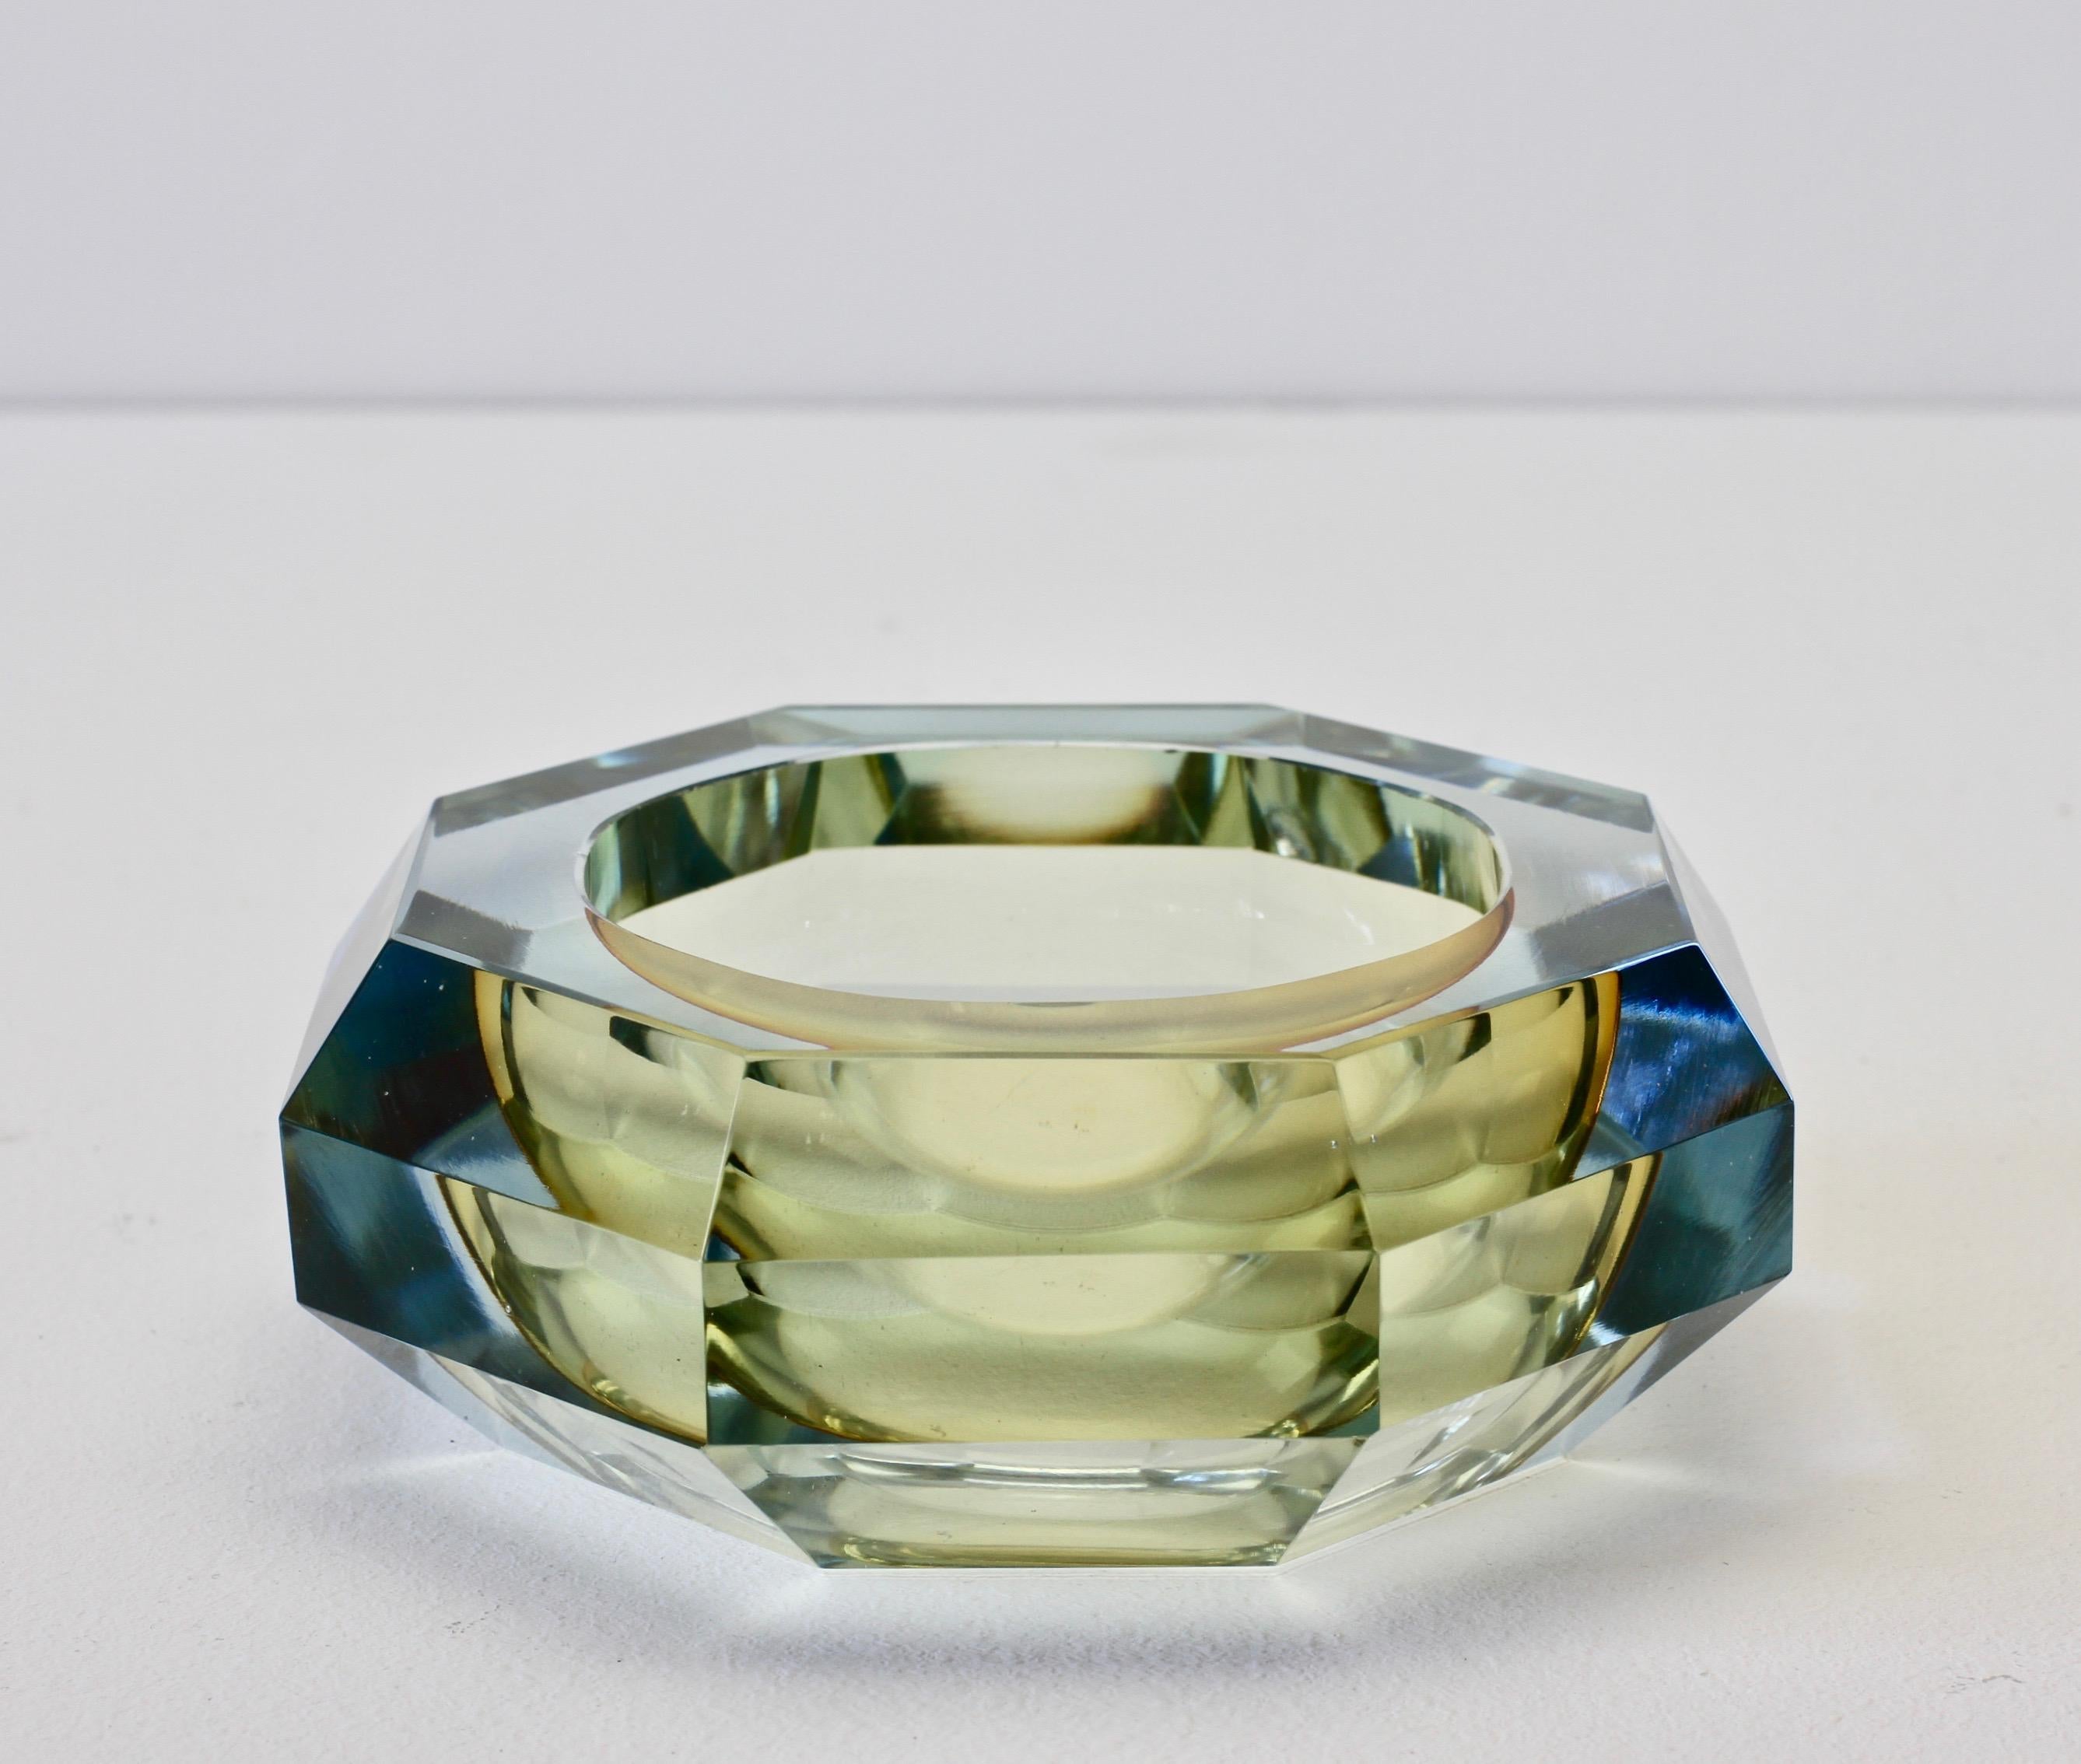 Italian Faceted Murano Sommerso Diamond Cut Glass Bowl Attributed to Mandruzzato